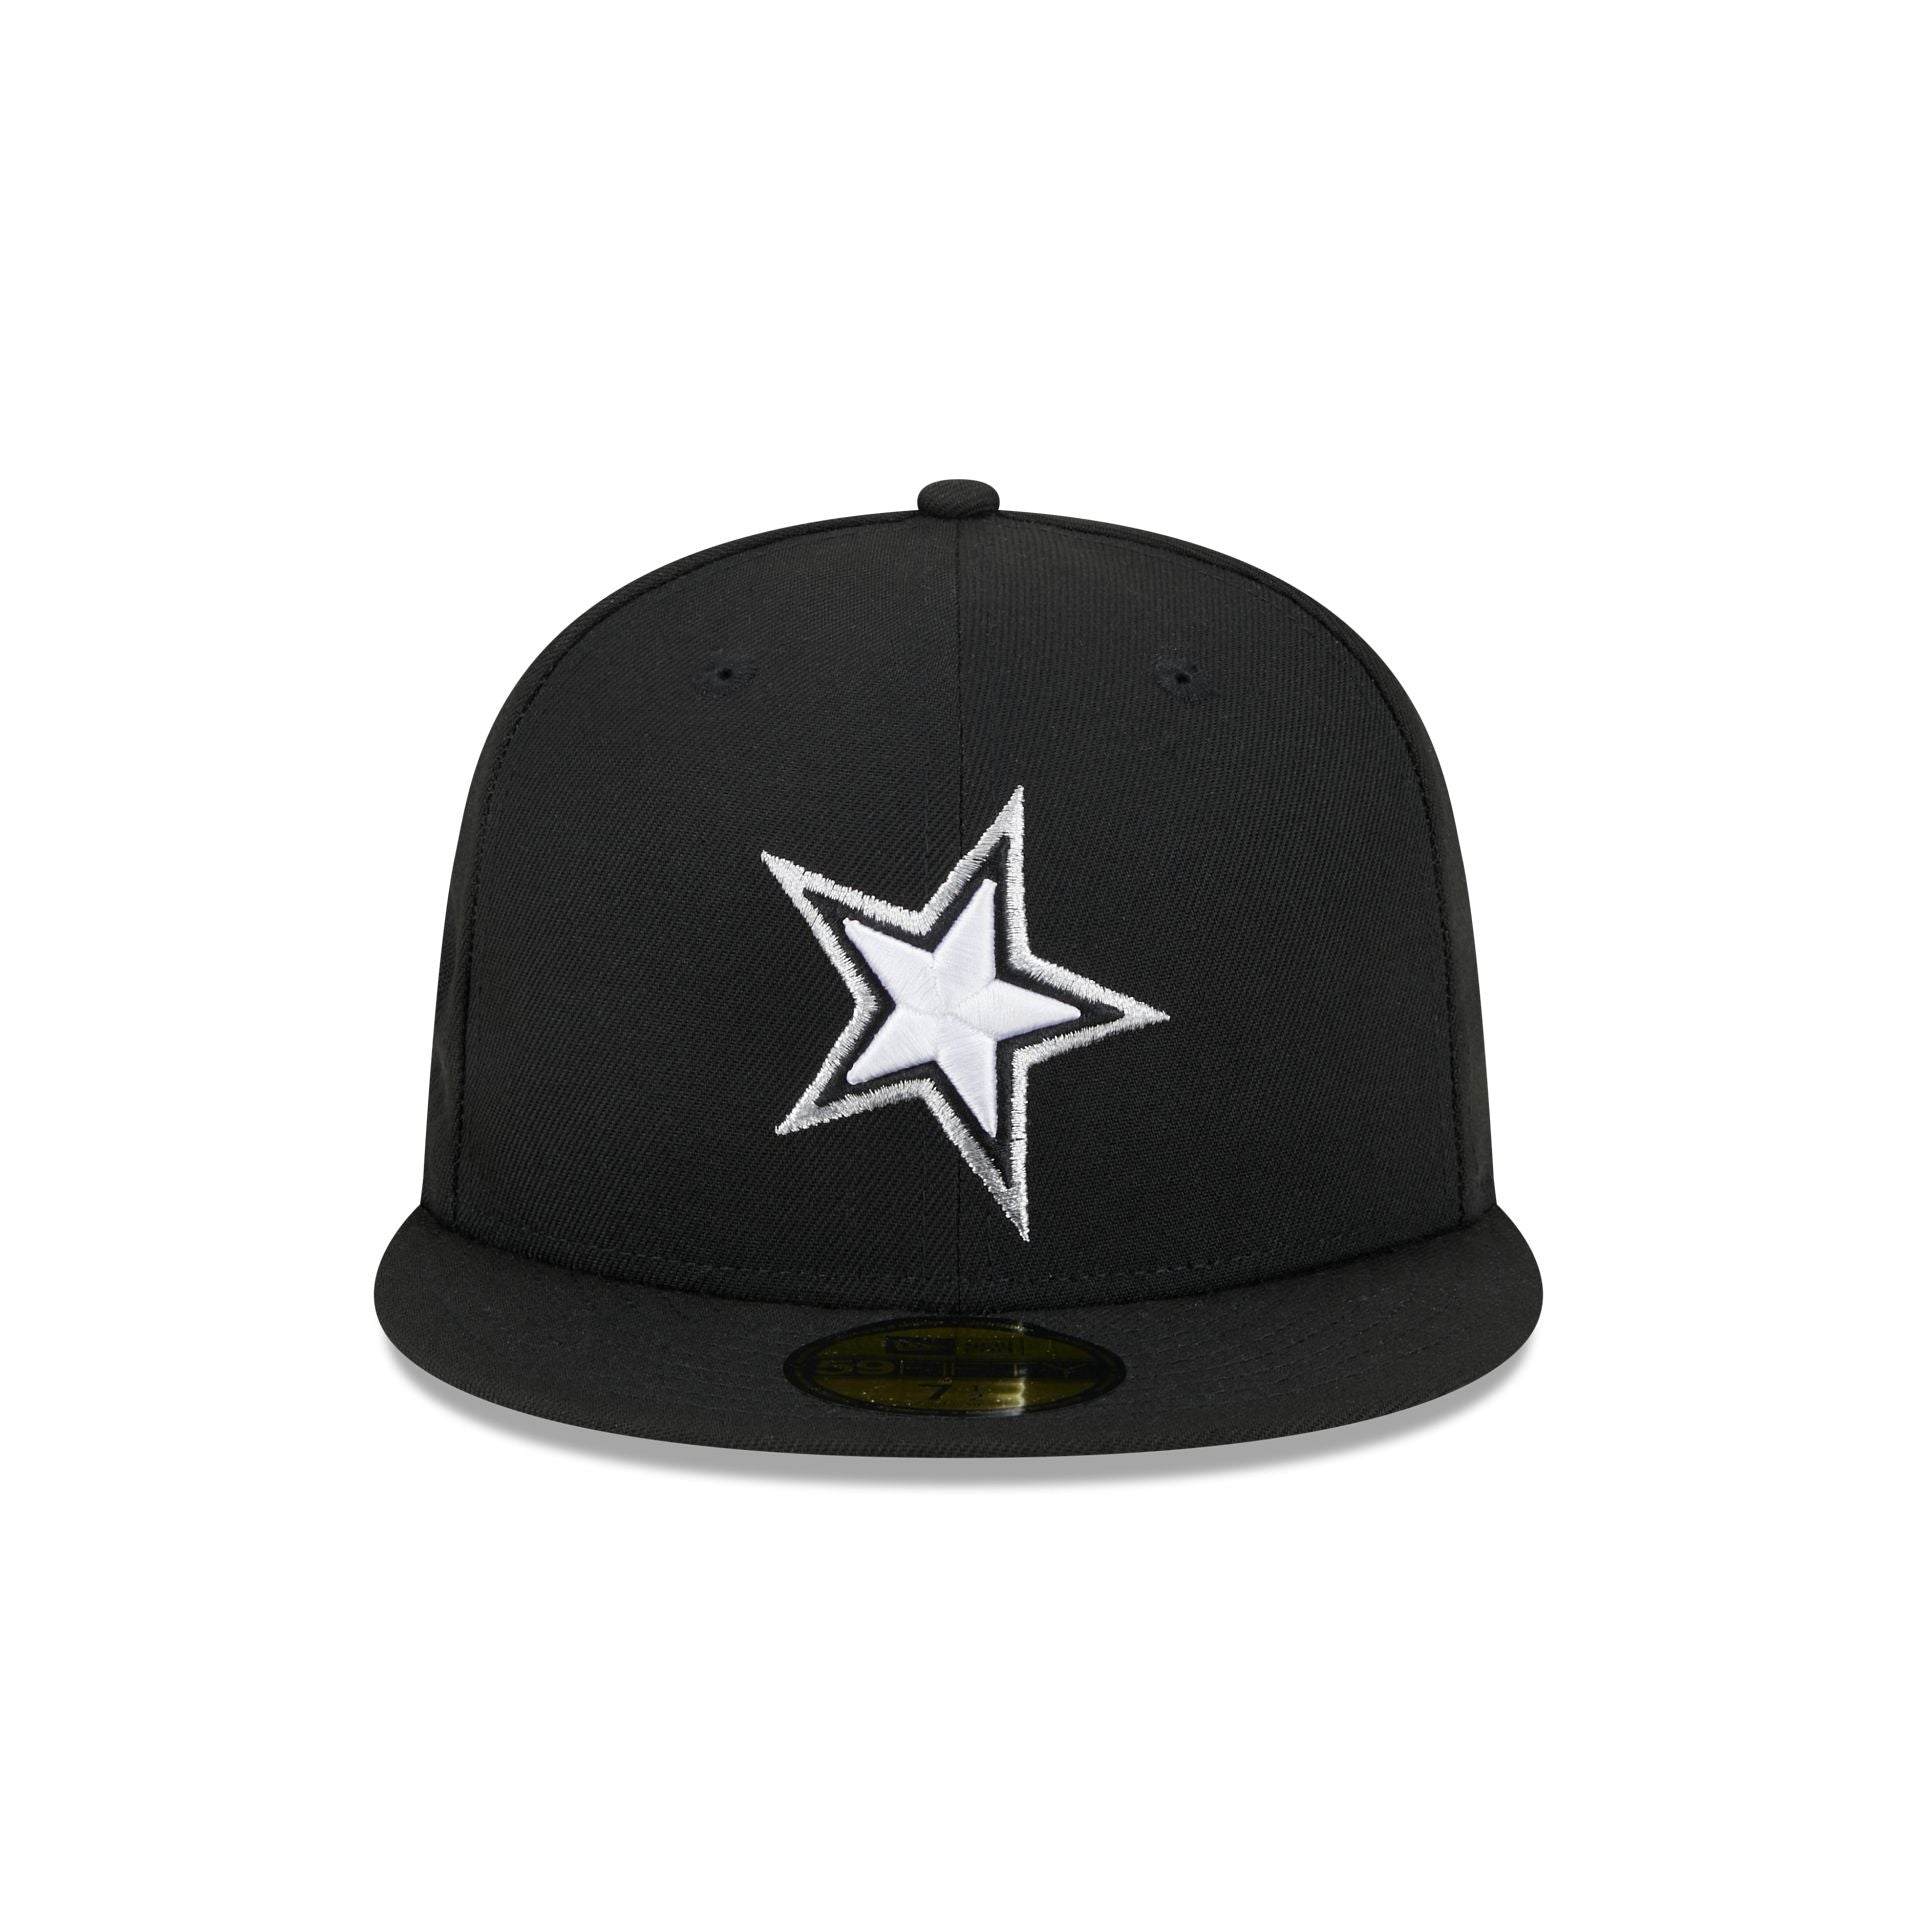 Orlando Magic Hats & Caps – New Era Cap